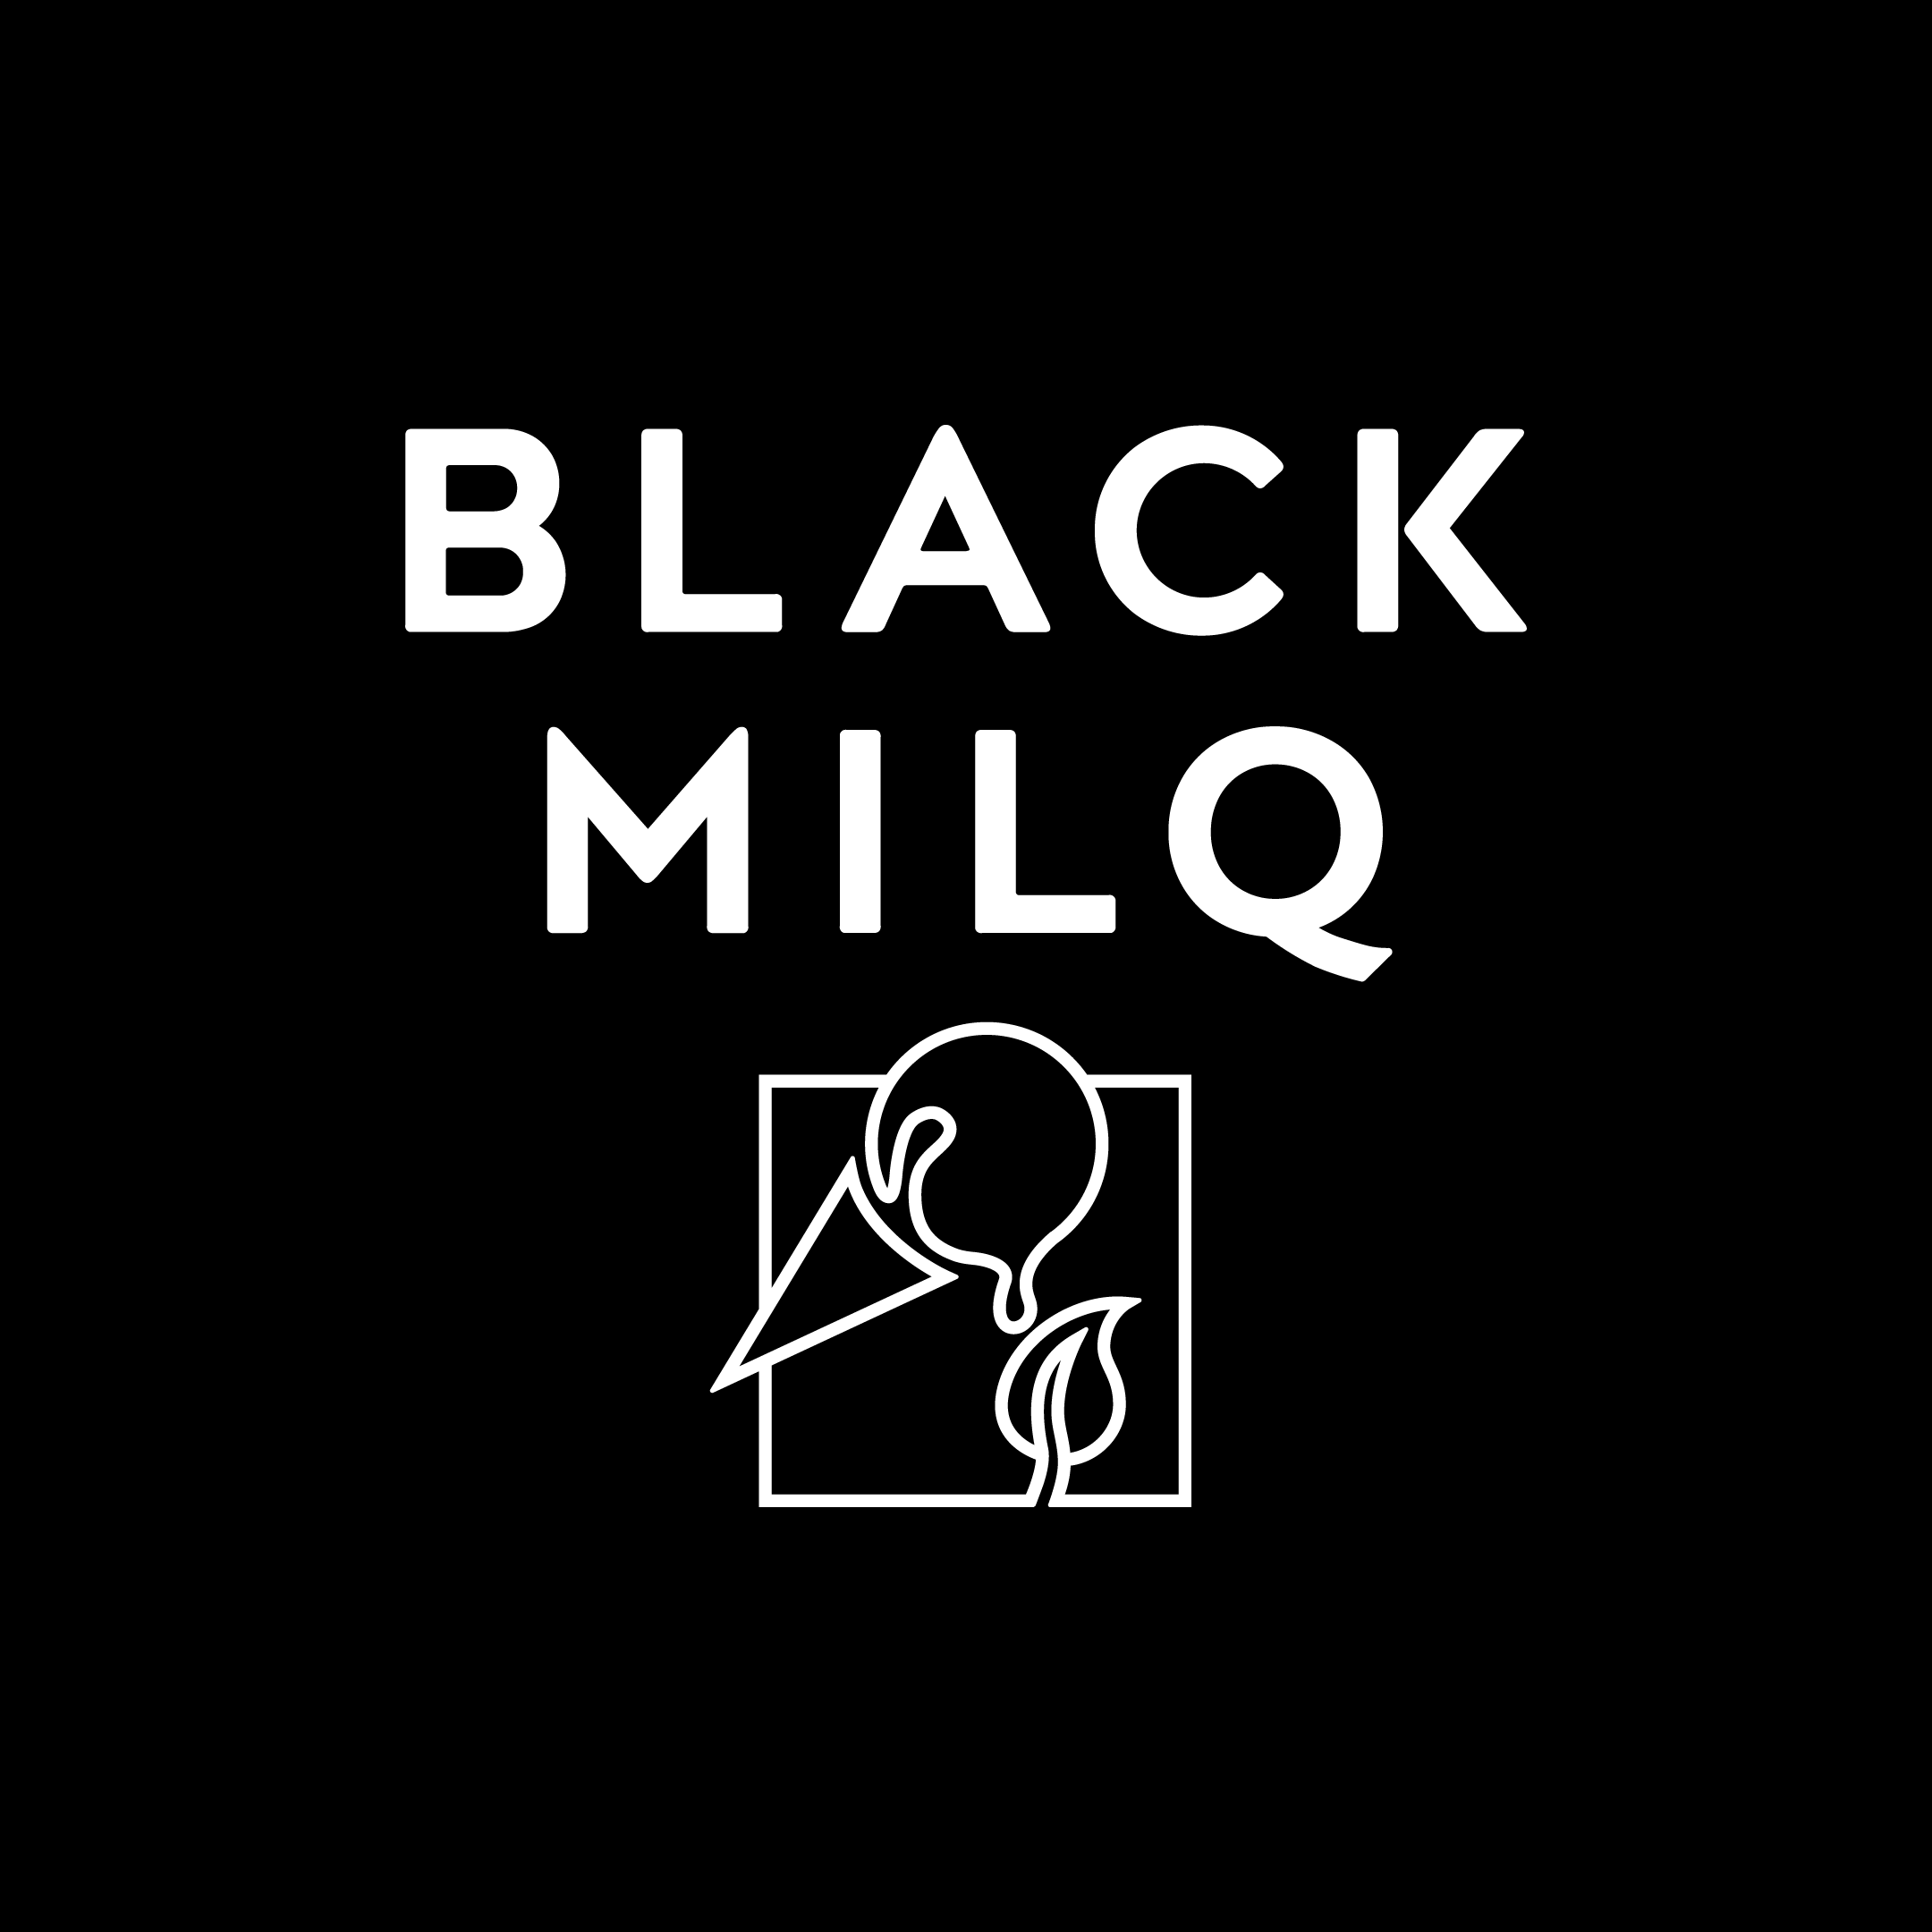 Black Milq logo